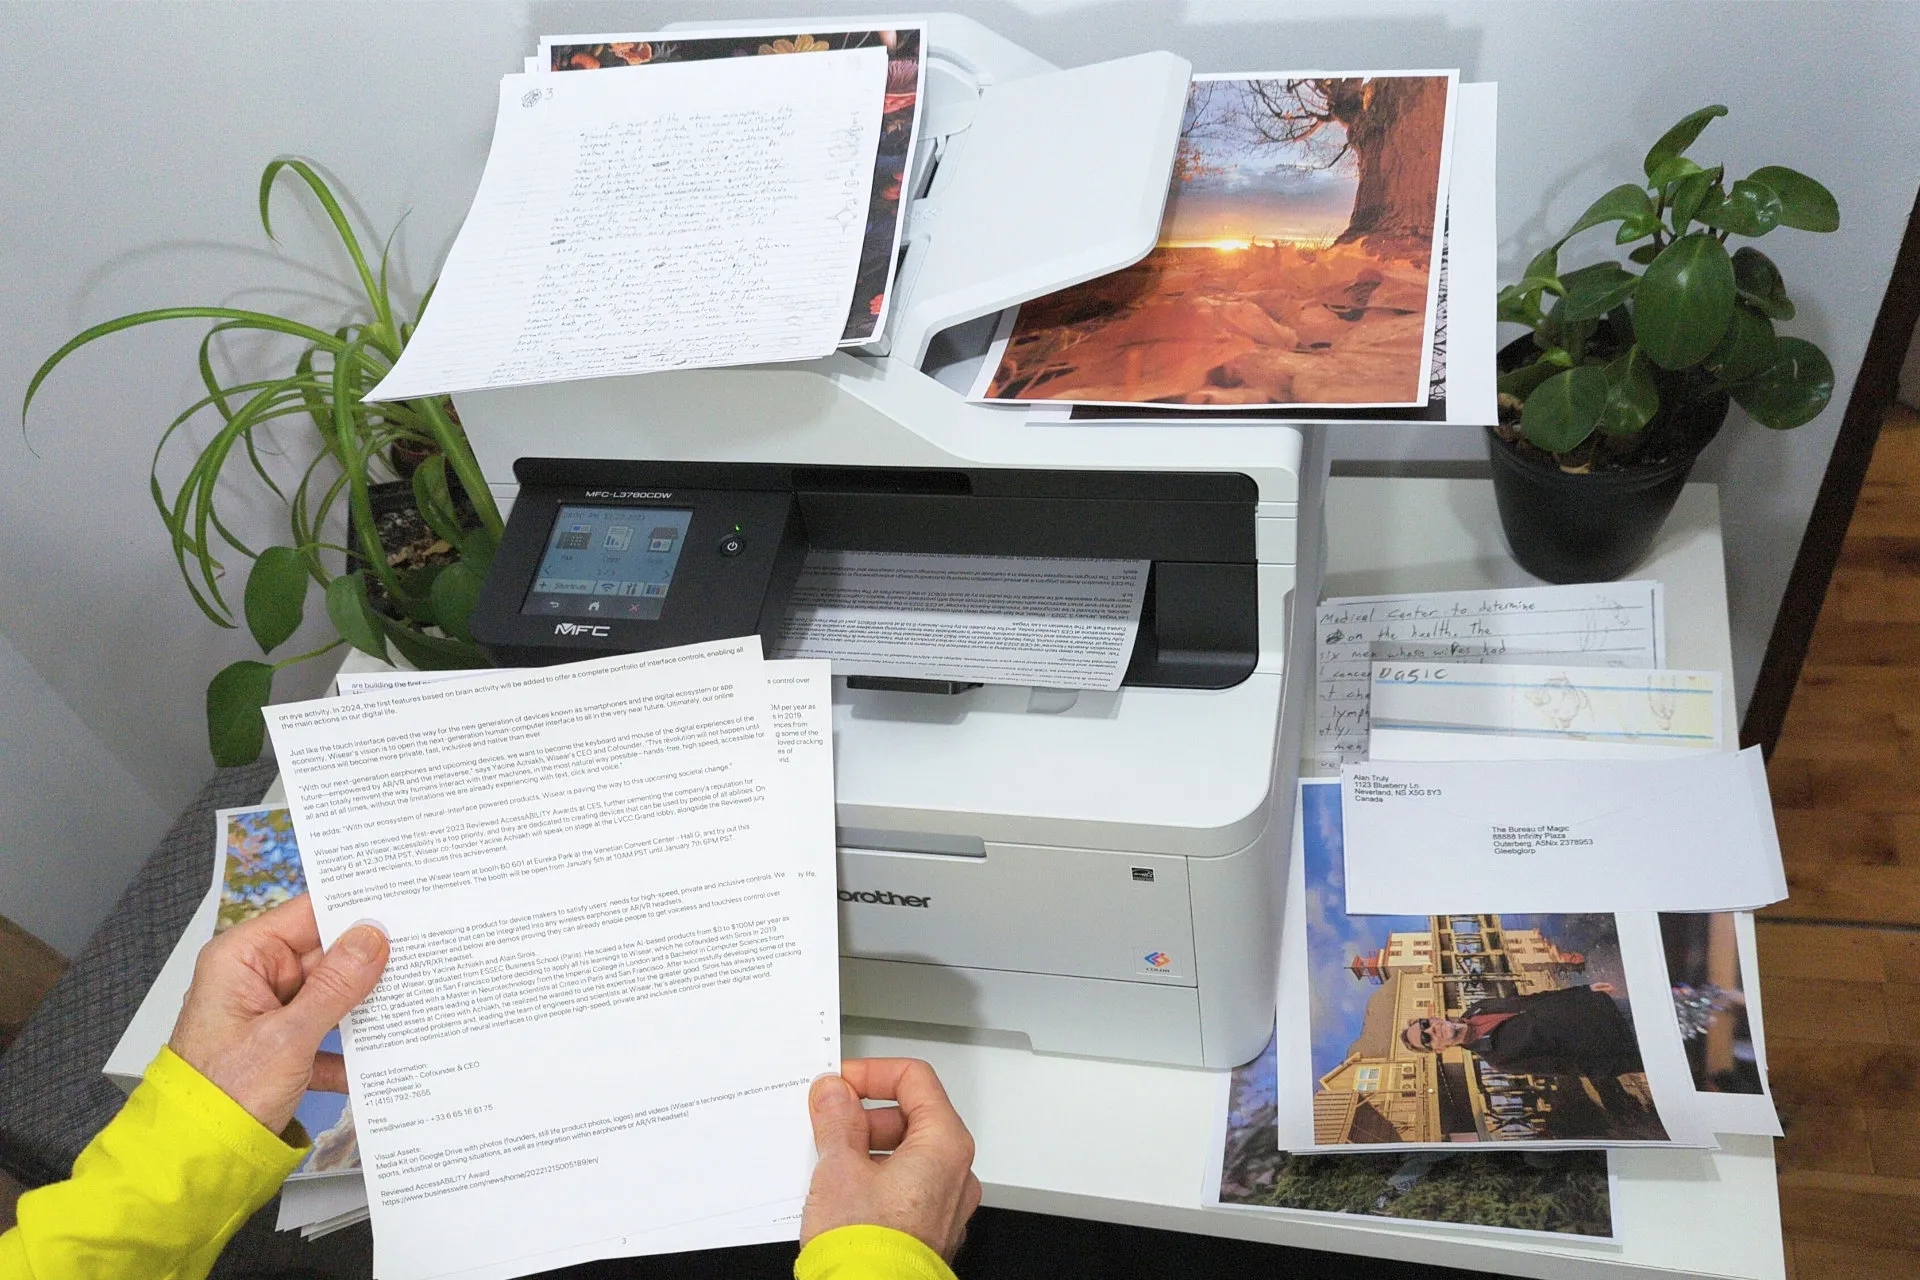 The Brother MFC-L3780 CDW 컬러 레이저 프린터는 그림, 흑백 및 컬러 문서로 둘러싸여 있습니다.